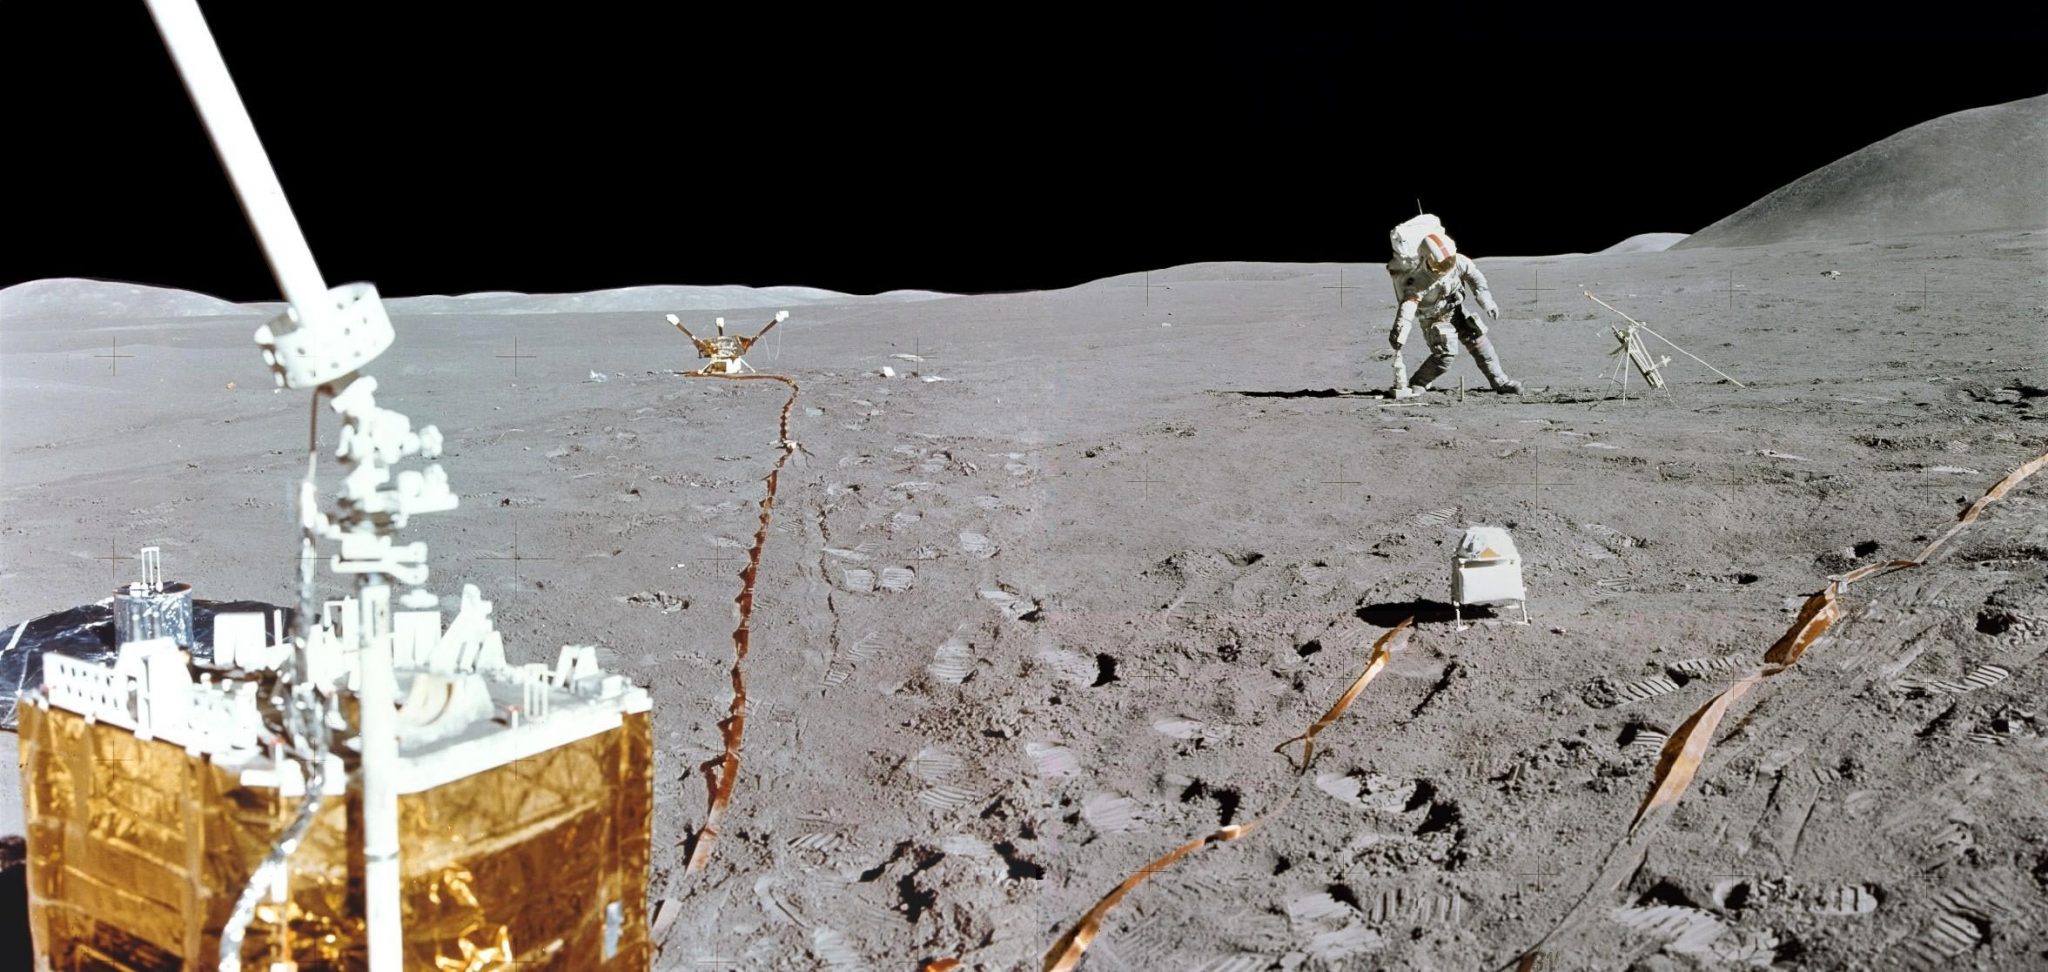 Аполлон НАСА. НАСА Аполлон 15. Американские астронавты Аполлон 15. Аполло 15 на Луне. Ступил на поверхность луны